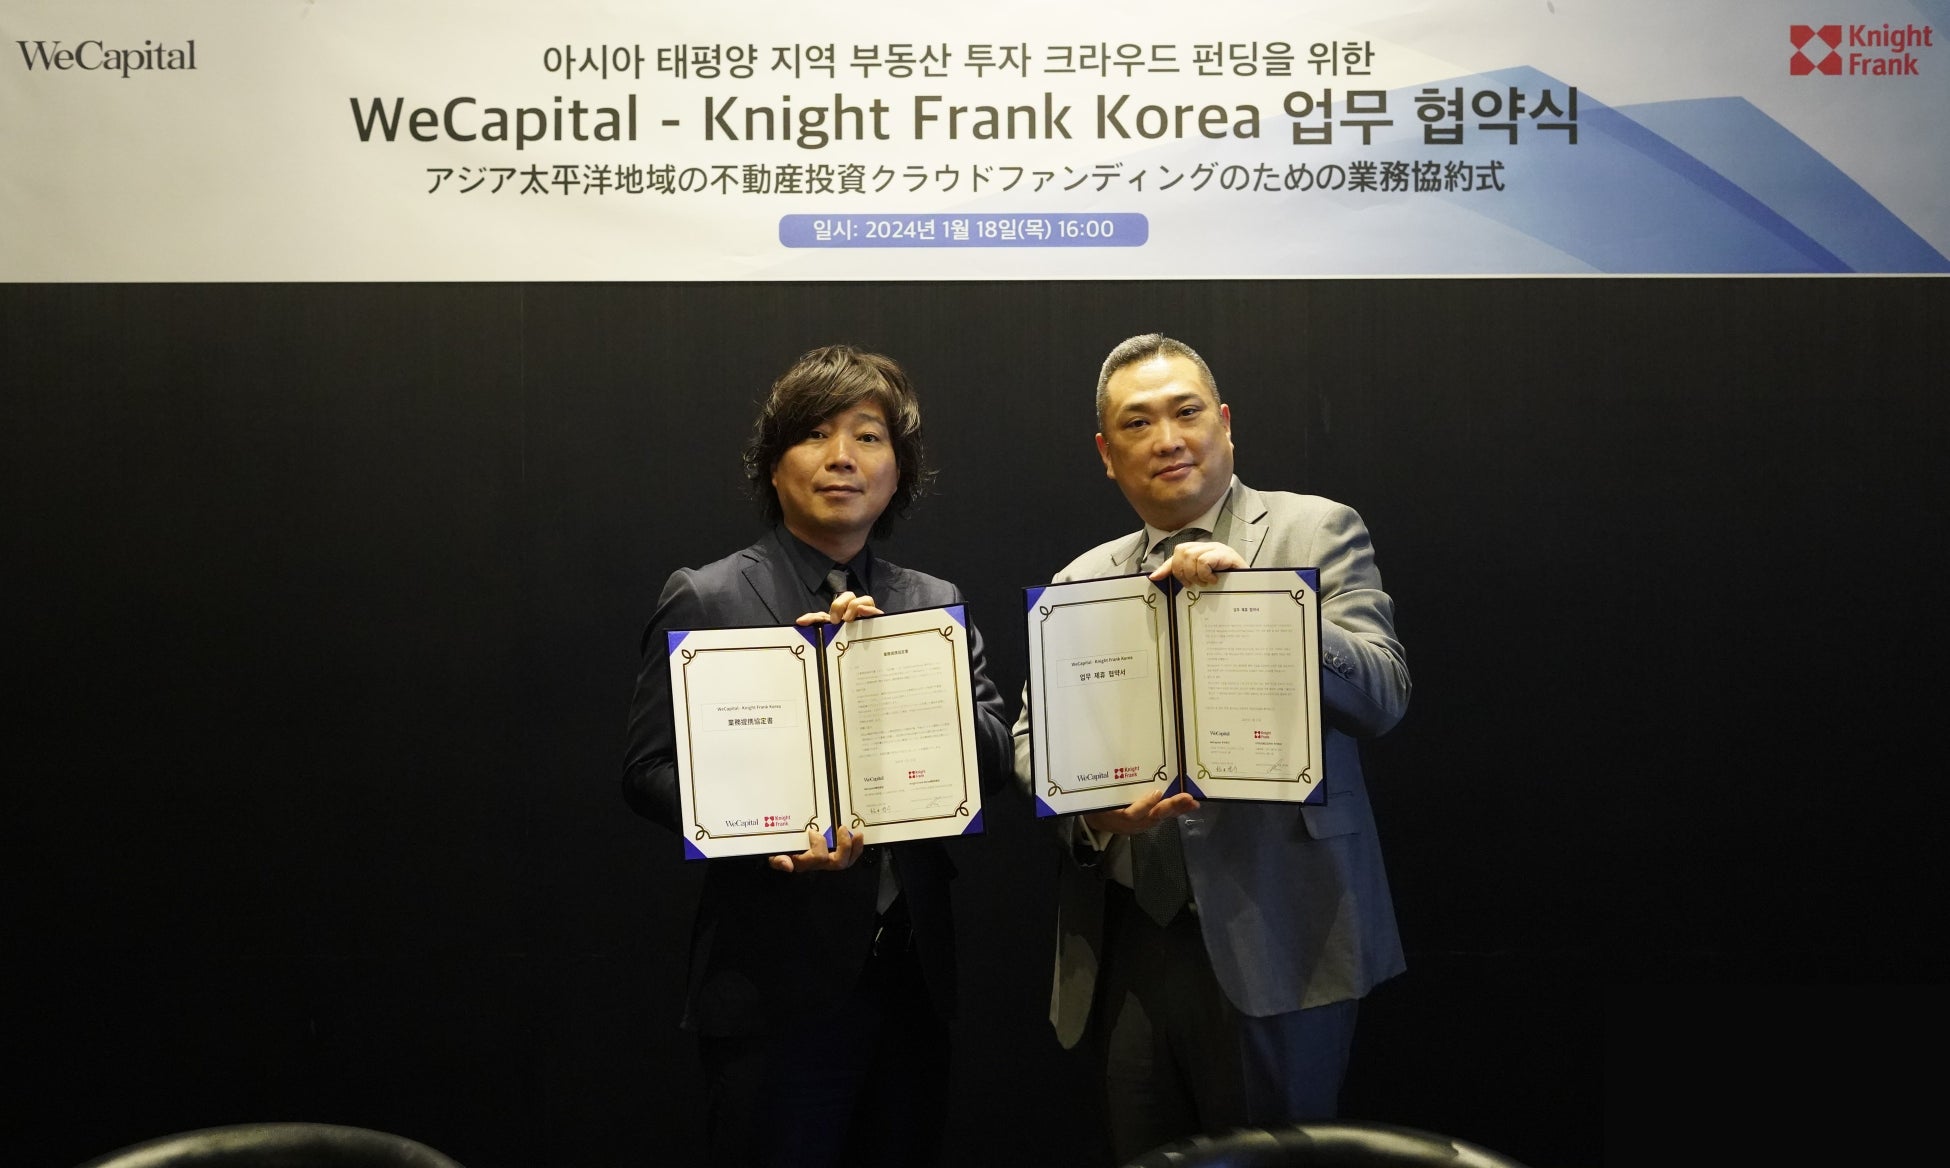 「ヤマワケ」を運営するWeCapital、独立系不動産総合コンサルとして世界屈指のKnight Frankグループ Knight Frank Koreaと資本業務提携